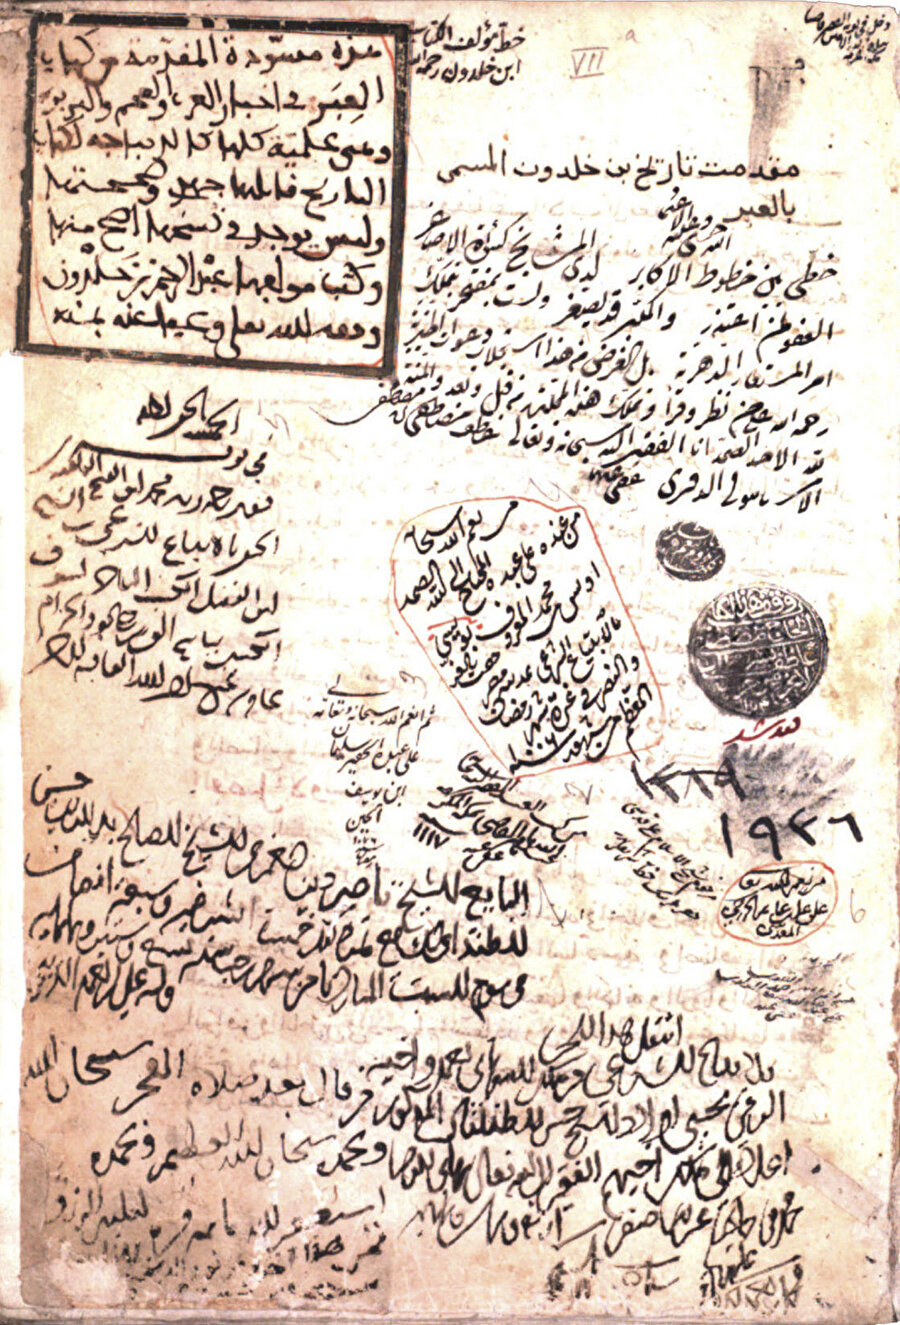 İbn Haldun'un Mukaddime'nin el yazması nüshasını tasdik eden el yazısı (sol üst çerçeve).